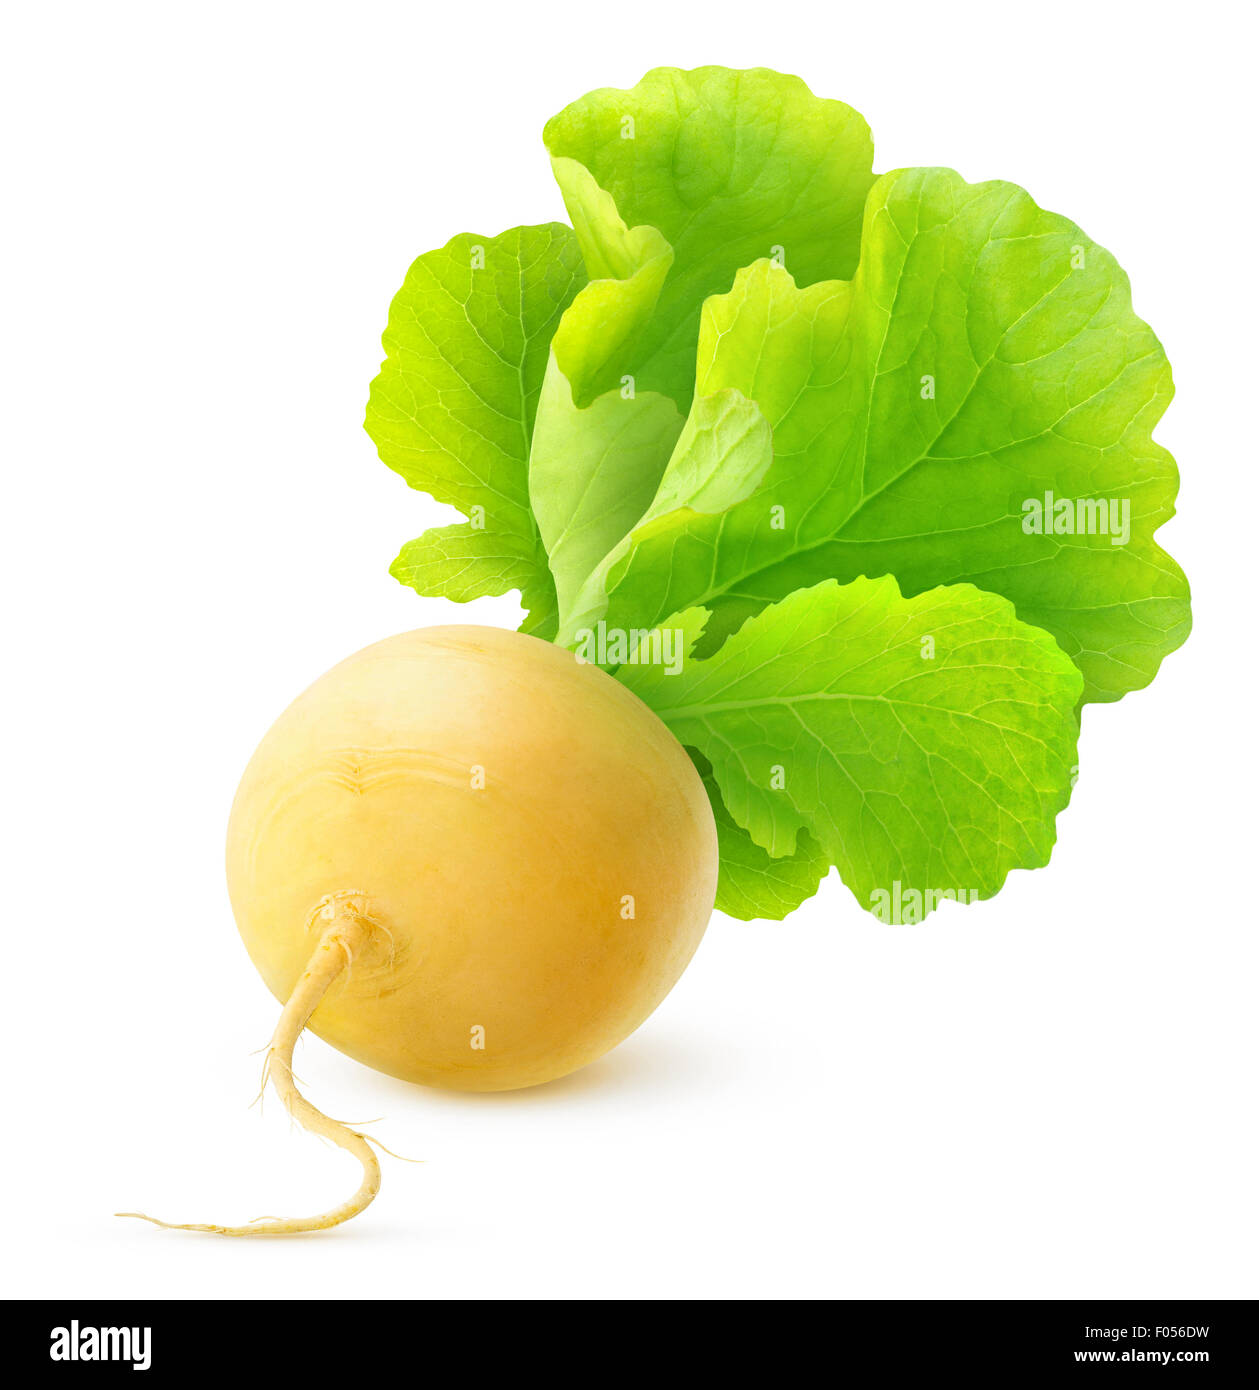 Yellow turnip isolated over white Stock Photo